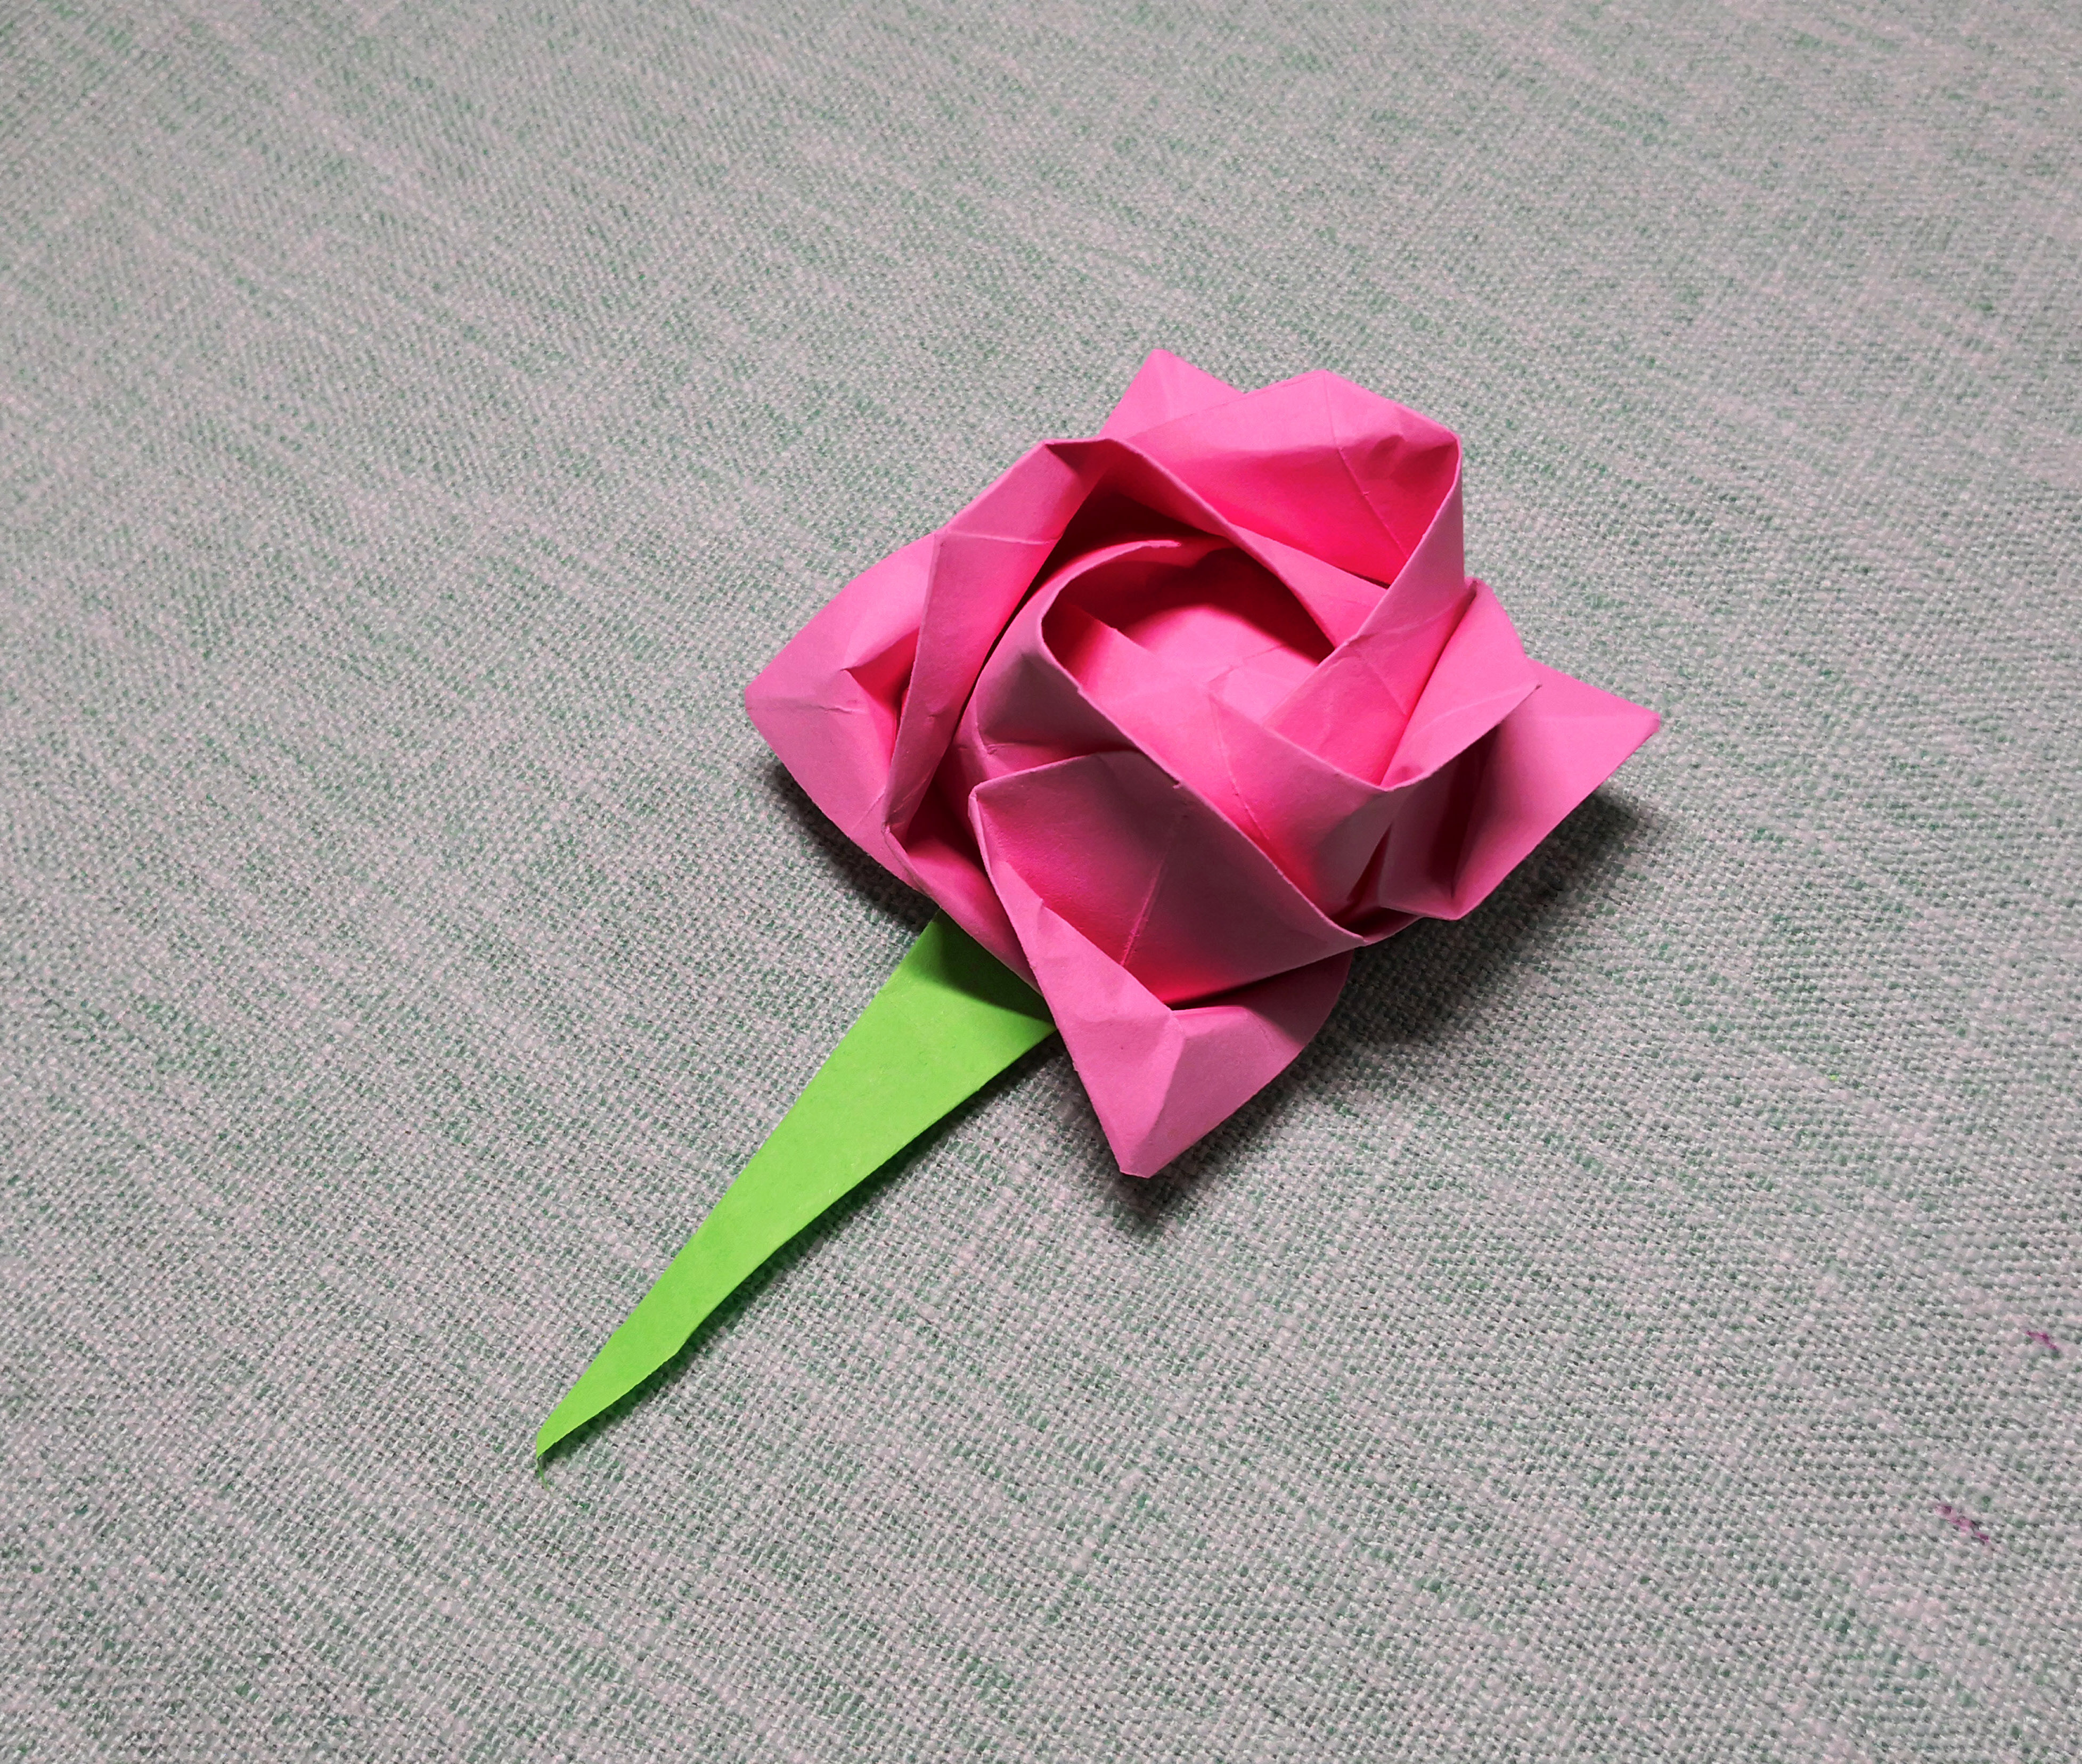 川崎玫瑰超清详细折纸教程,适合新手的玫瑰花经典折法